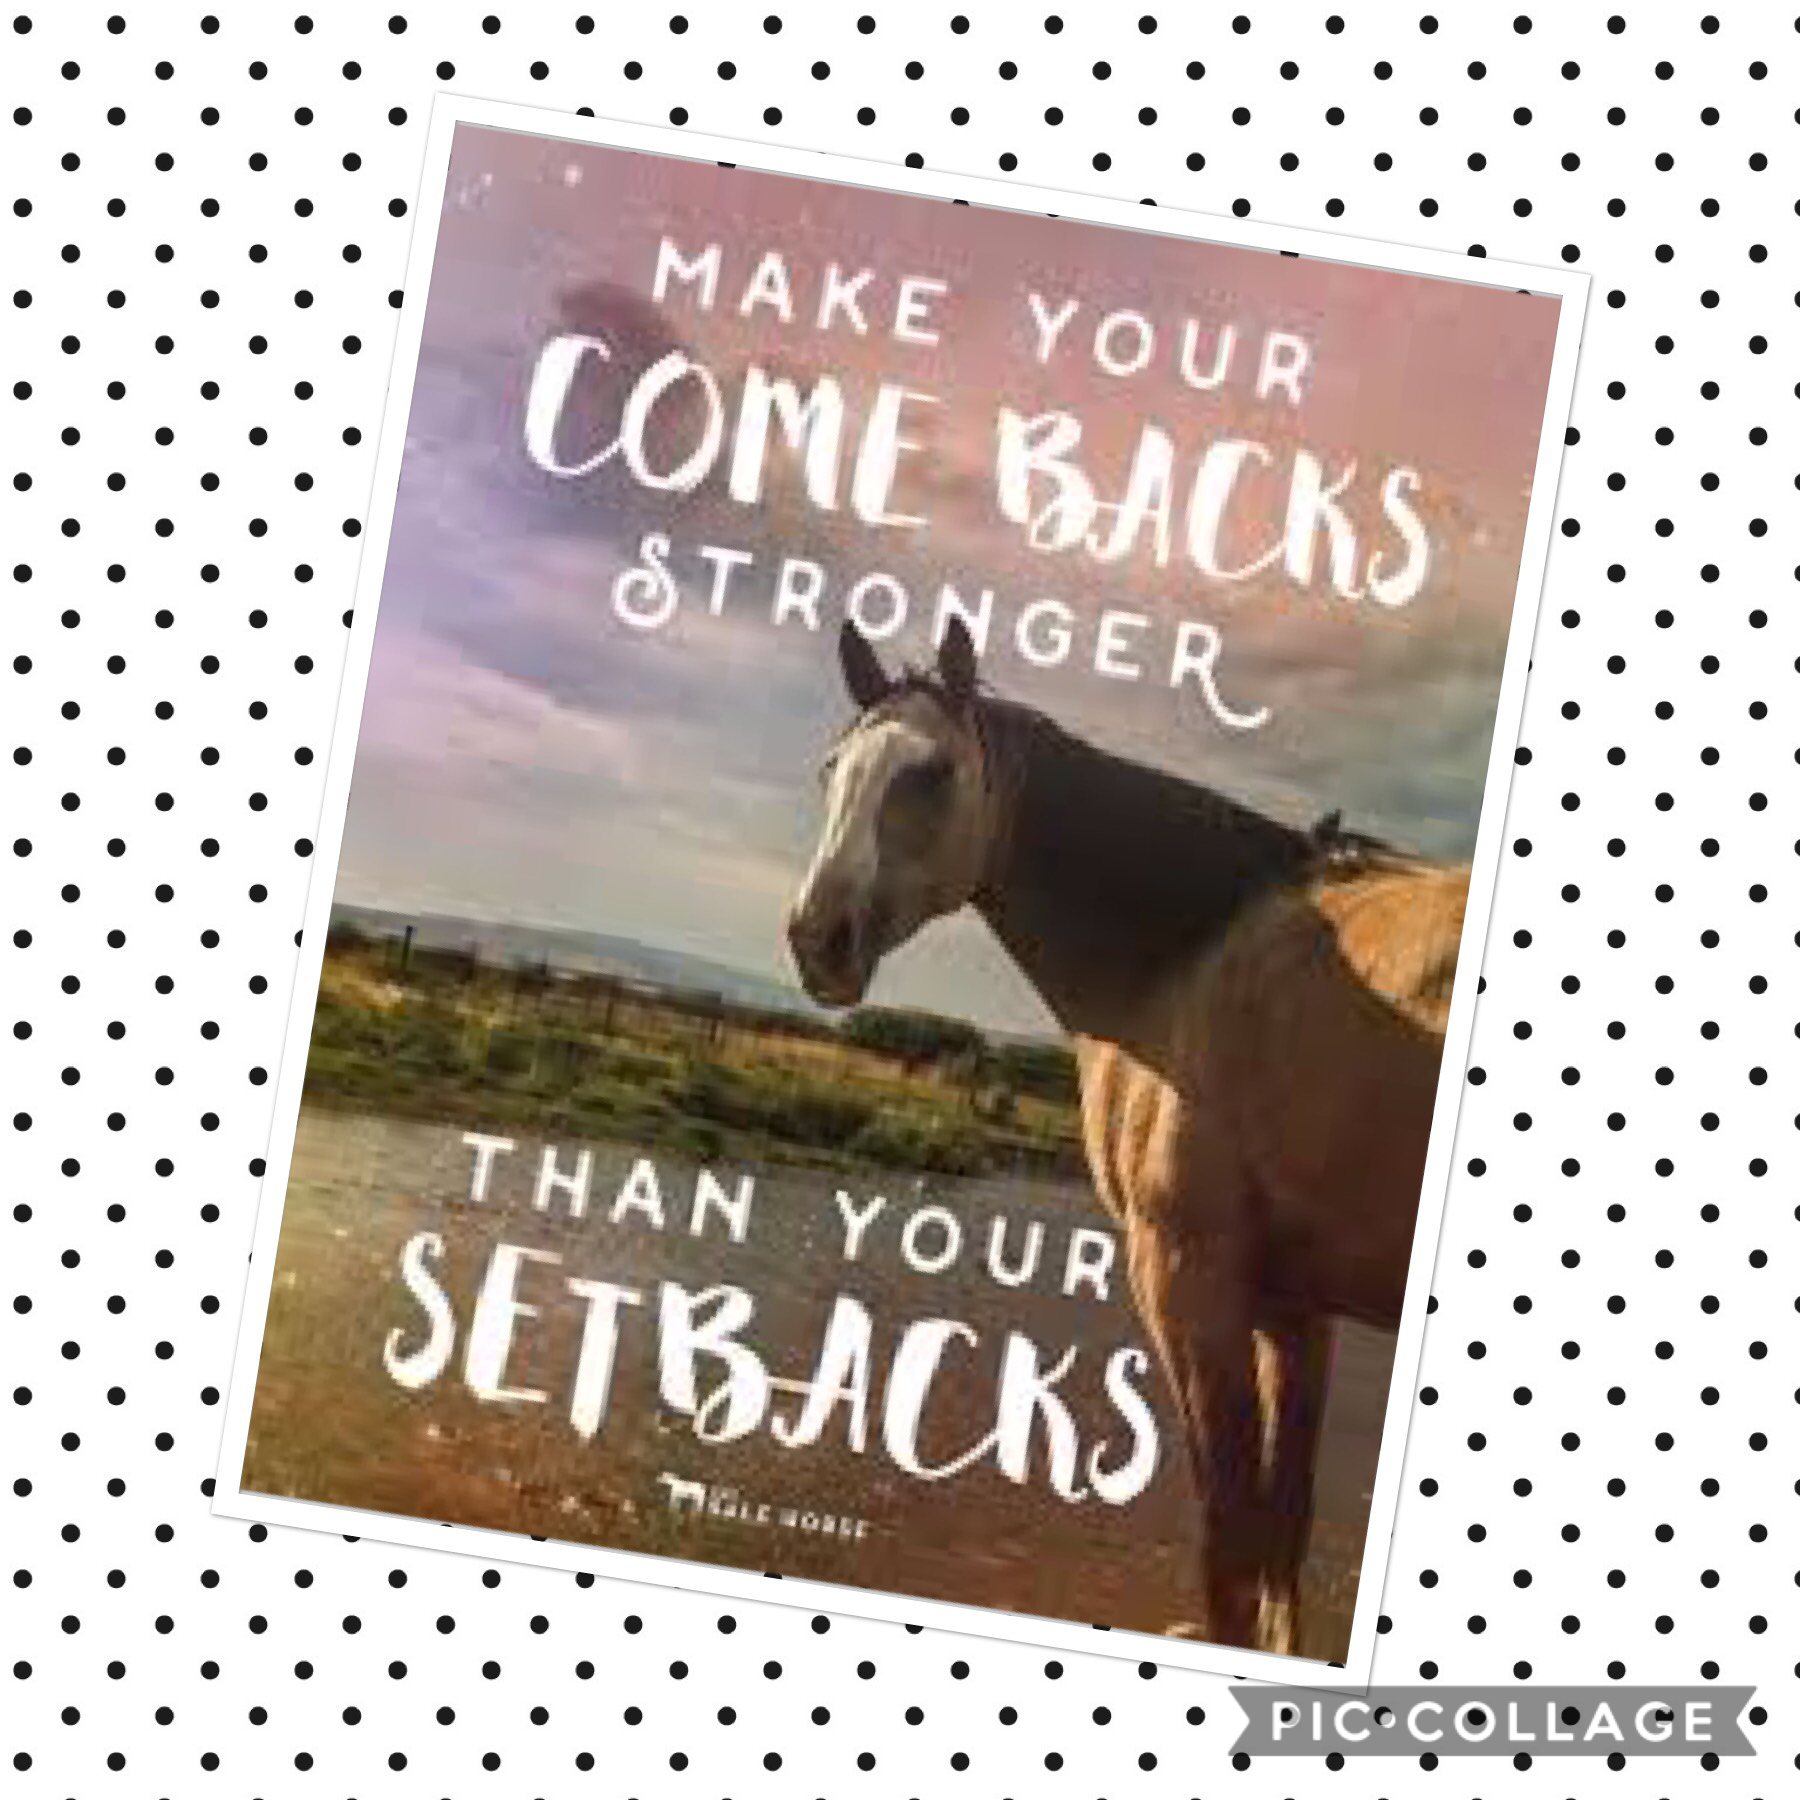 Make your comebacks stronger than your setbacks